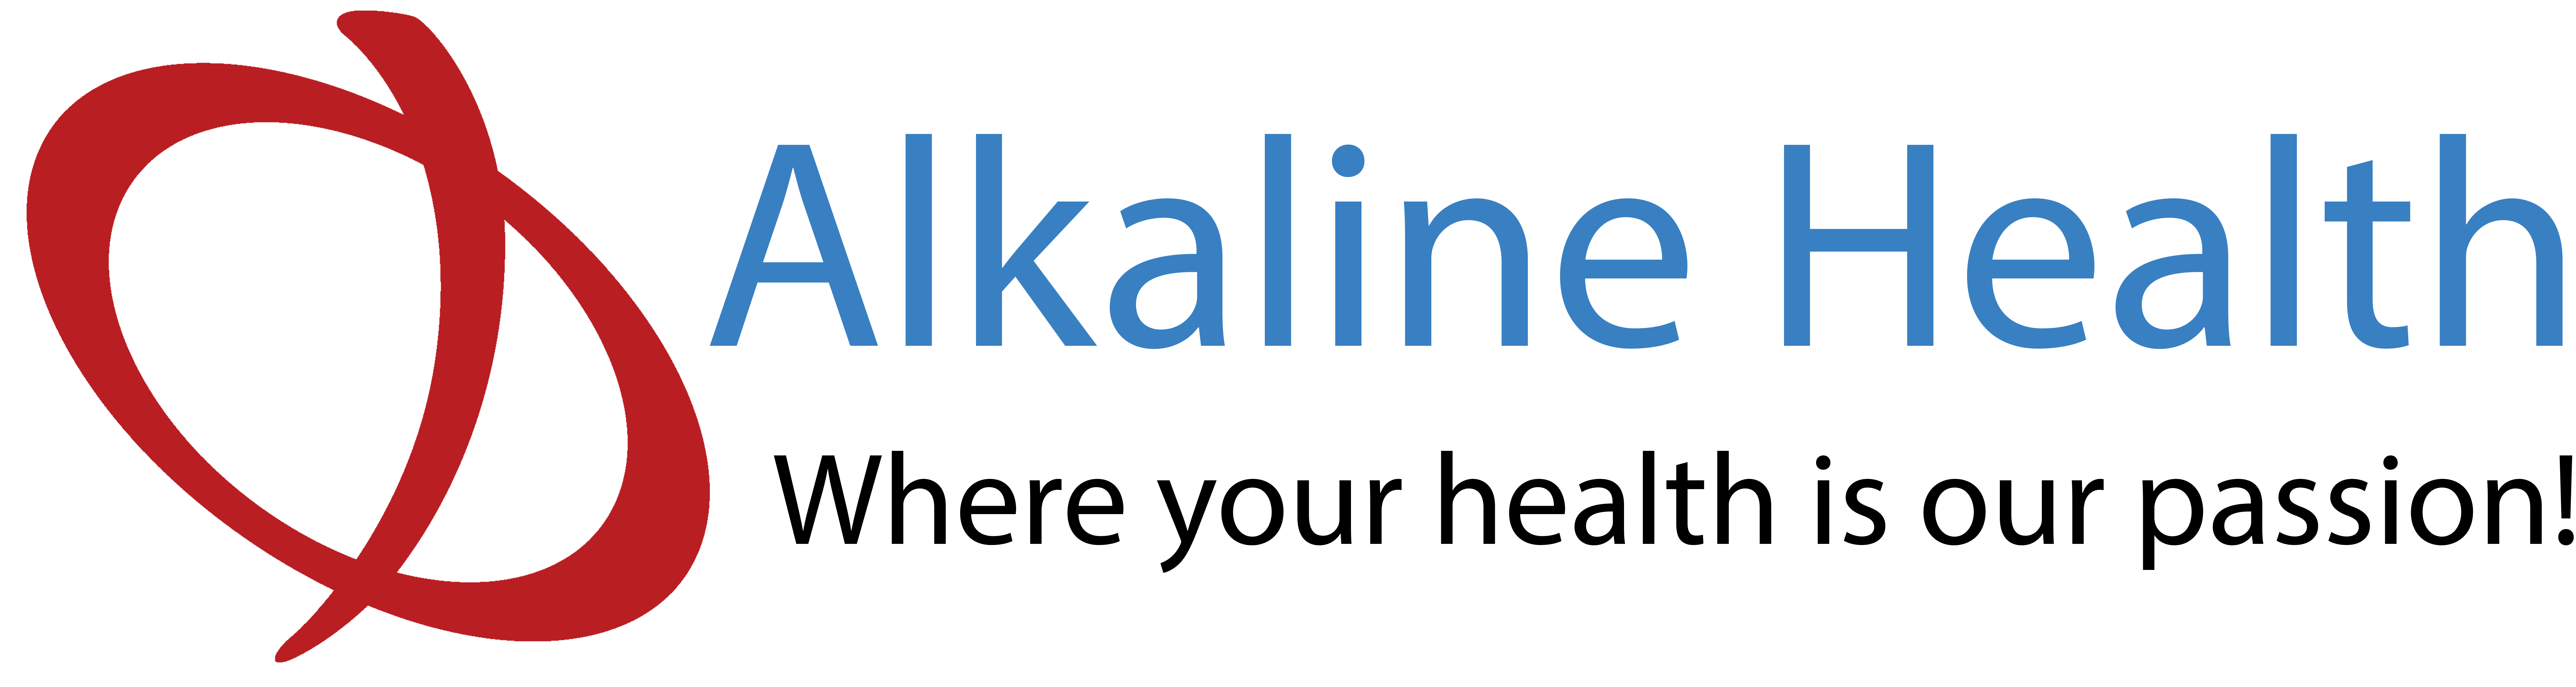 Alkaline Health